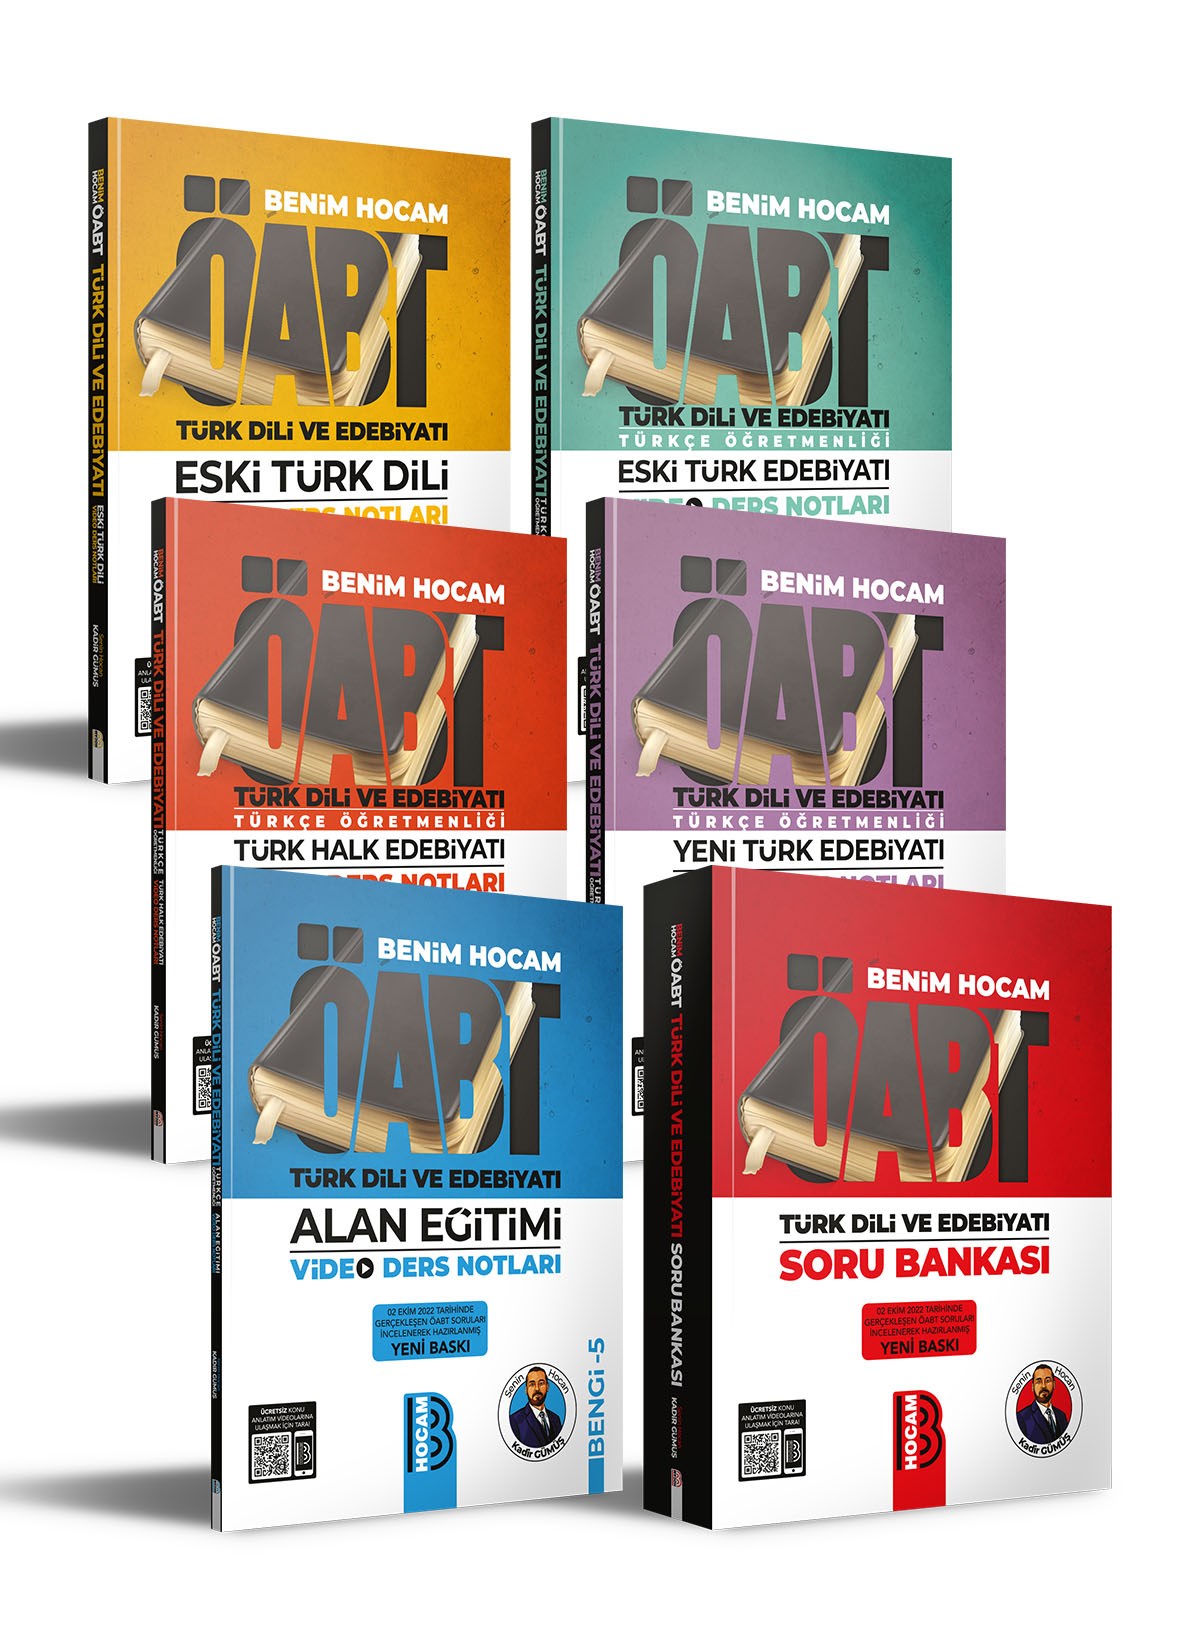 Benim Hocam ÖABT Türk Dili ve Edebiyatı Video Ders Notları BENGİ Serisi ve  Soru Bankası Seti